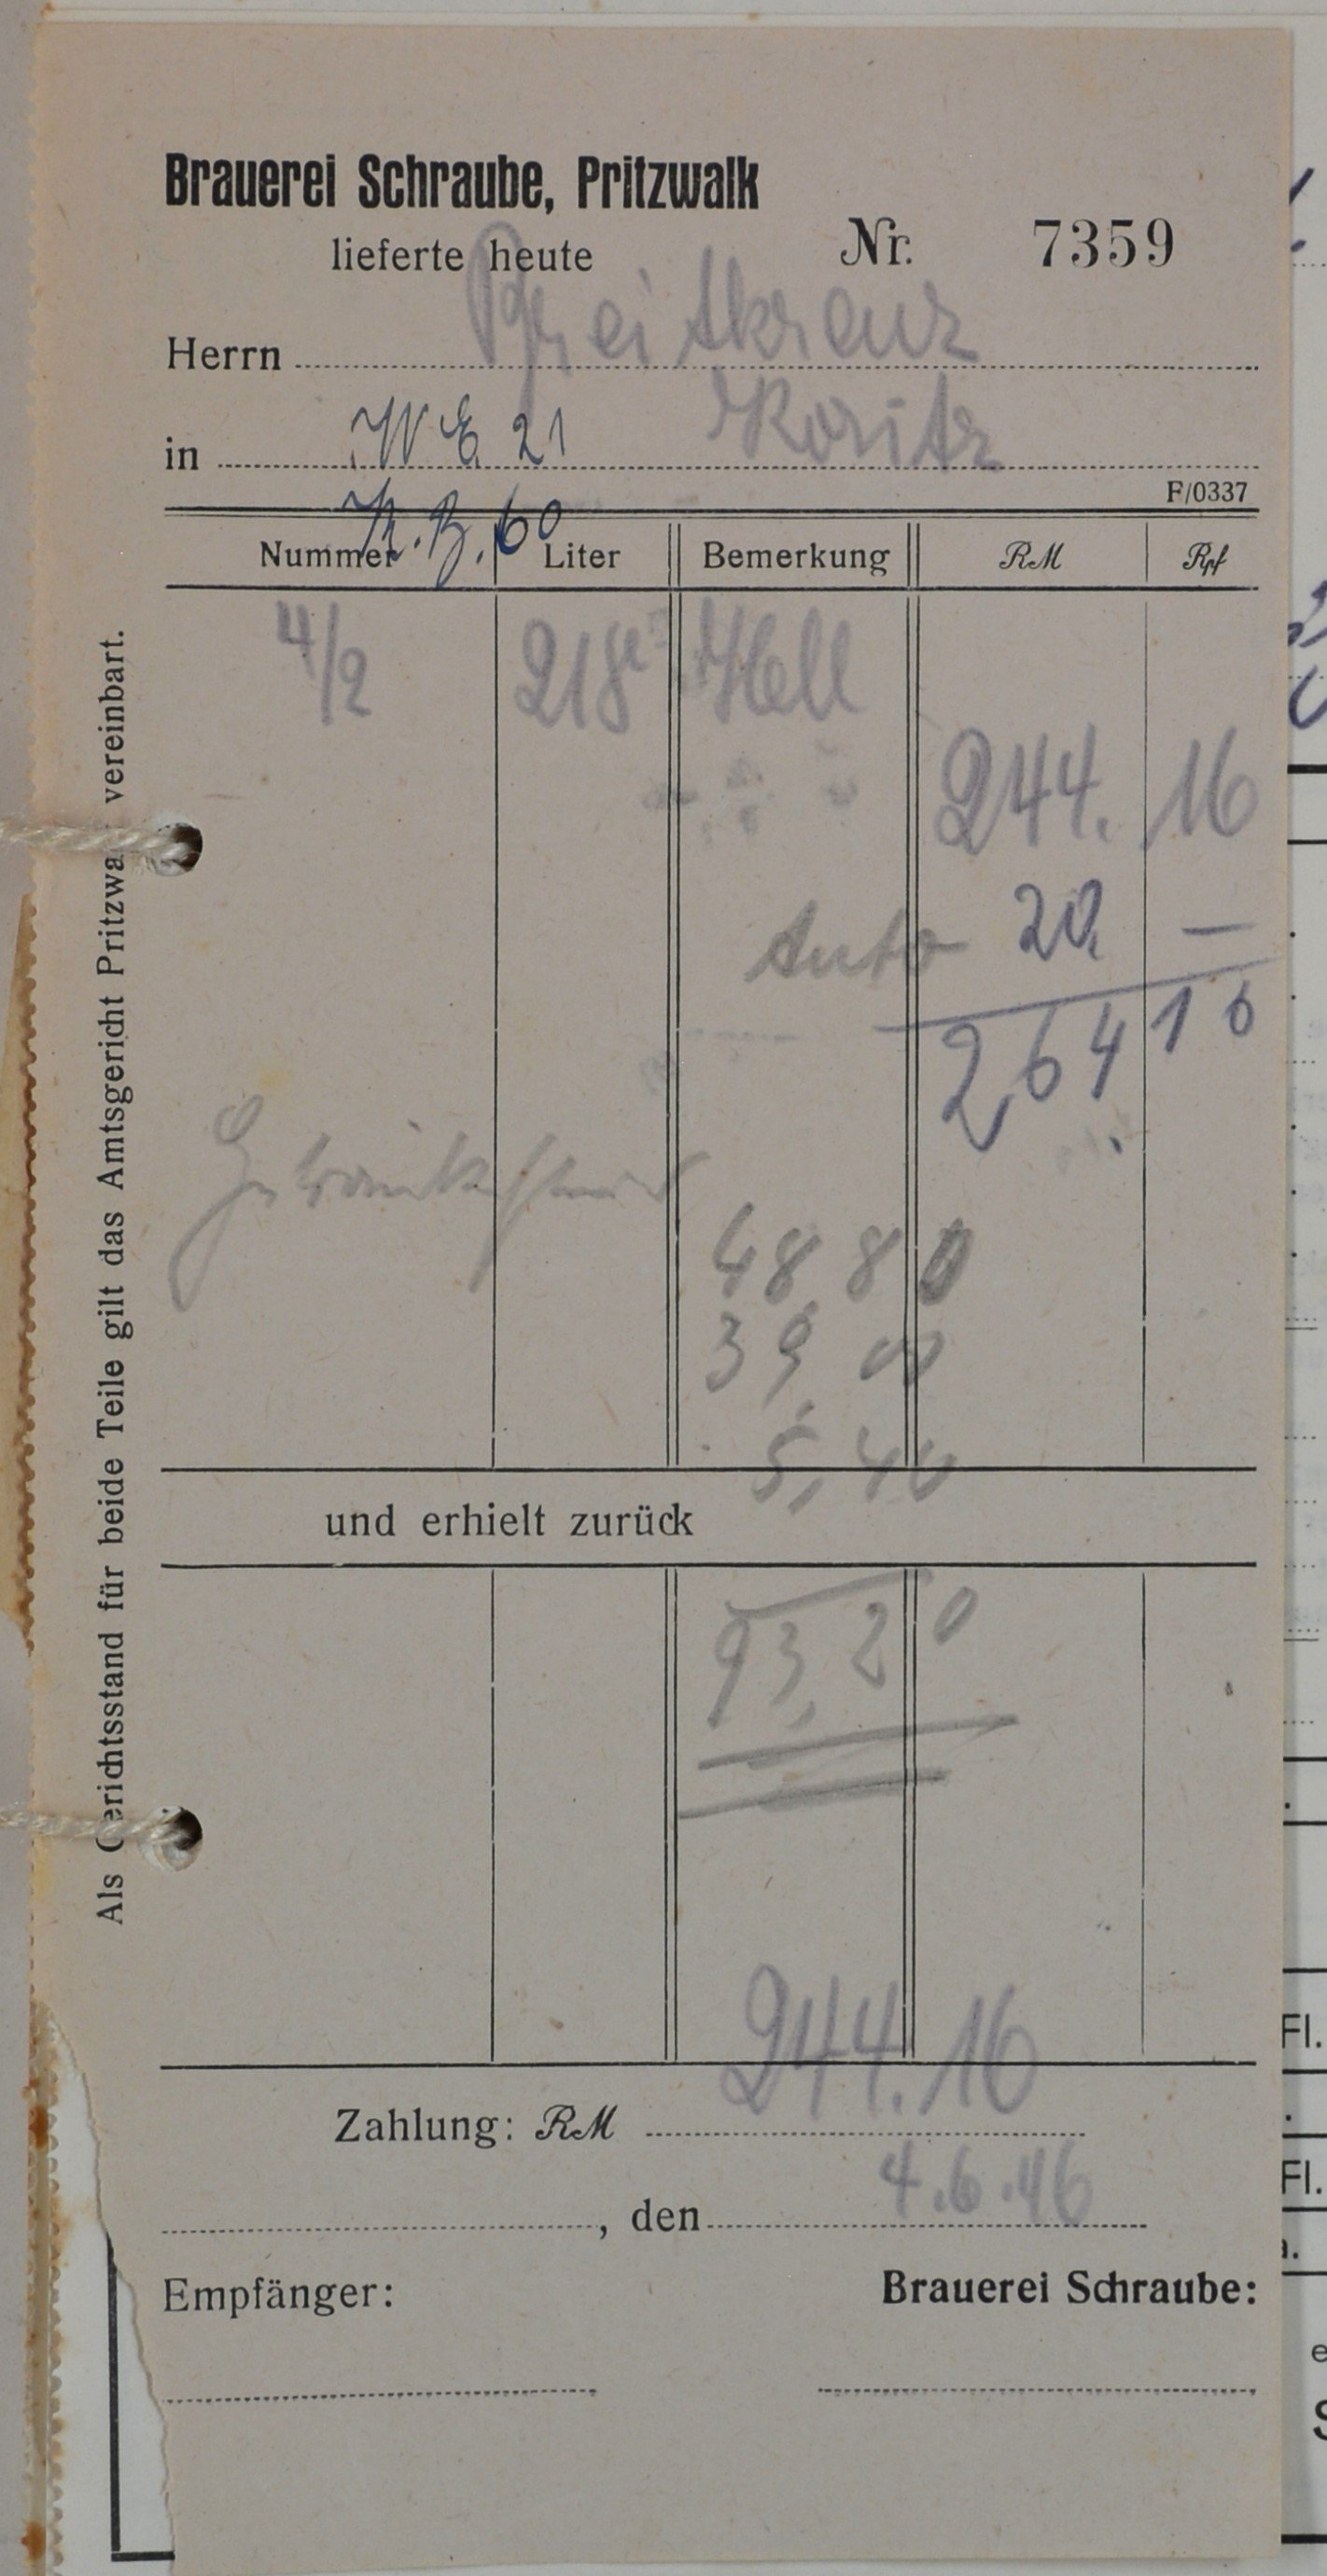 Rechnung von der Brauerei Schraube aus Pritzwalk für Wilhelm Breitkreuz (DDR Geschichtsmuseum im Dokumentationszentrum Perleberg CC BY-SA)